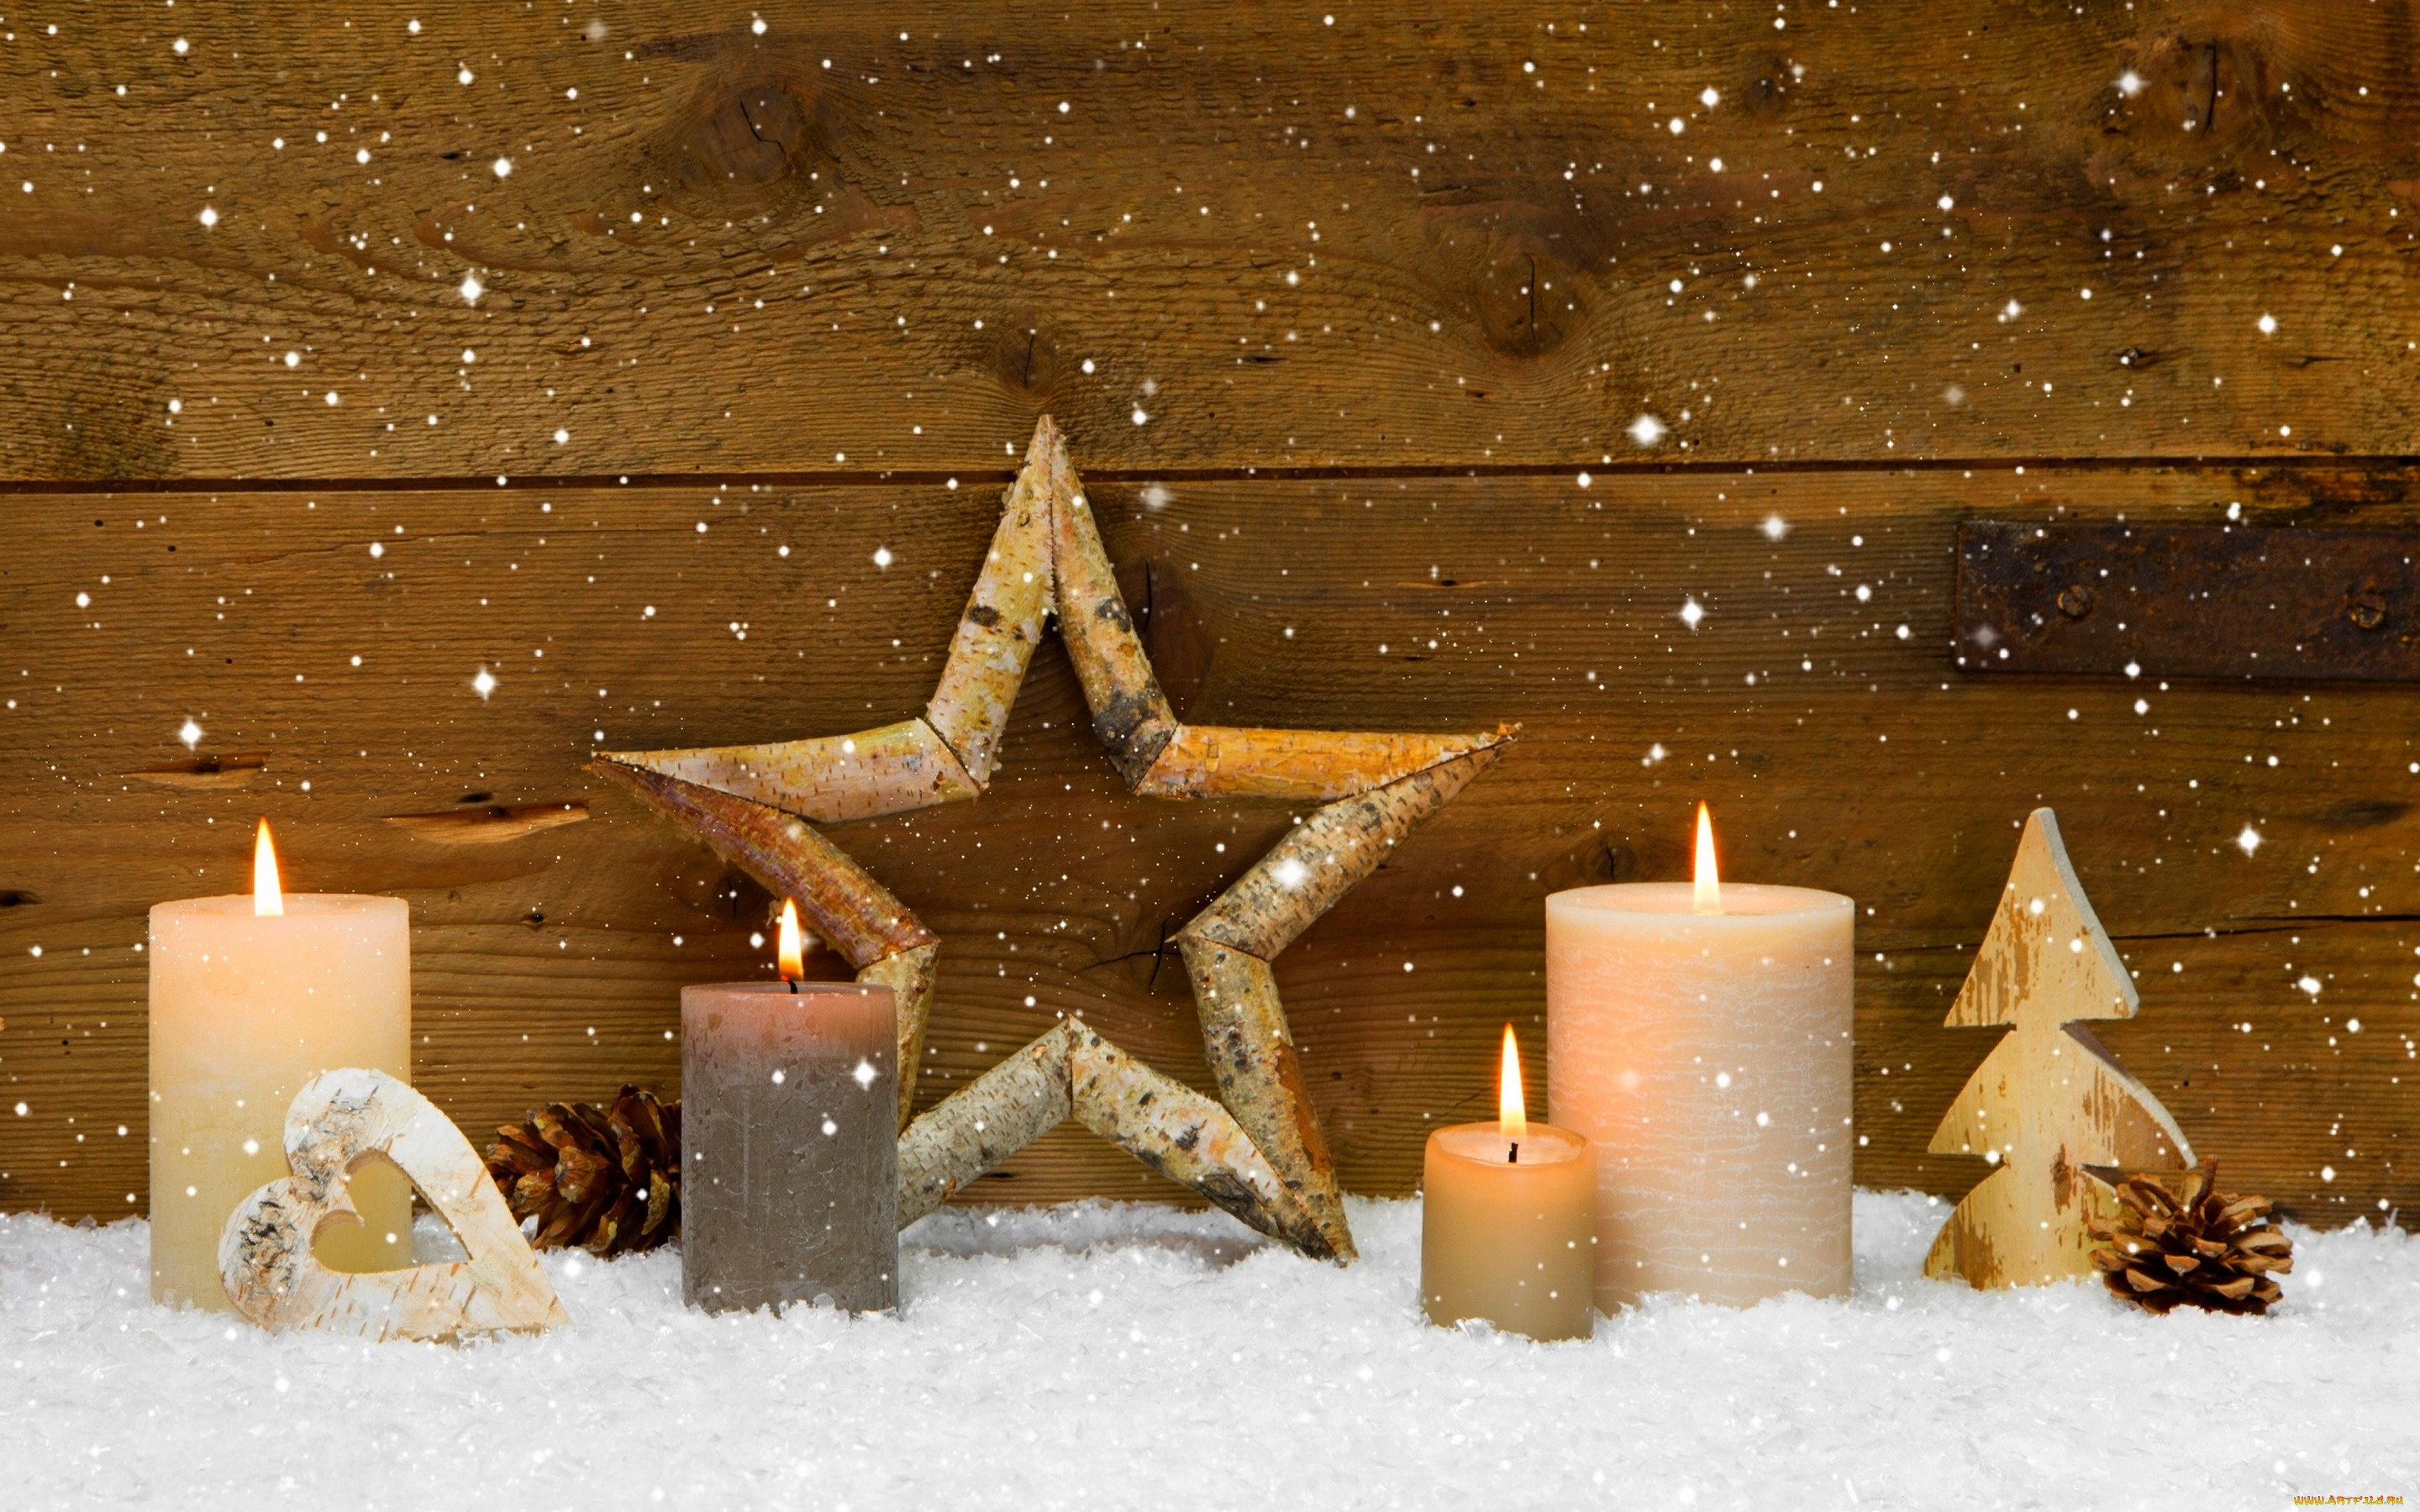 праздничные, новогодние, свечи, winter, candles, star, cones, holiday, heart, merry, christmas, decoration, сердце, праздник, зима, с, рождеством, христовым, рождественские, украшения, свечи, звезды, конусы